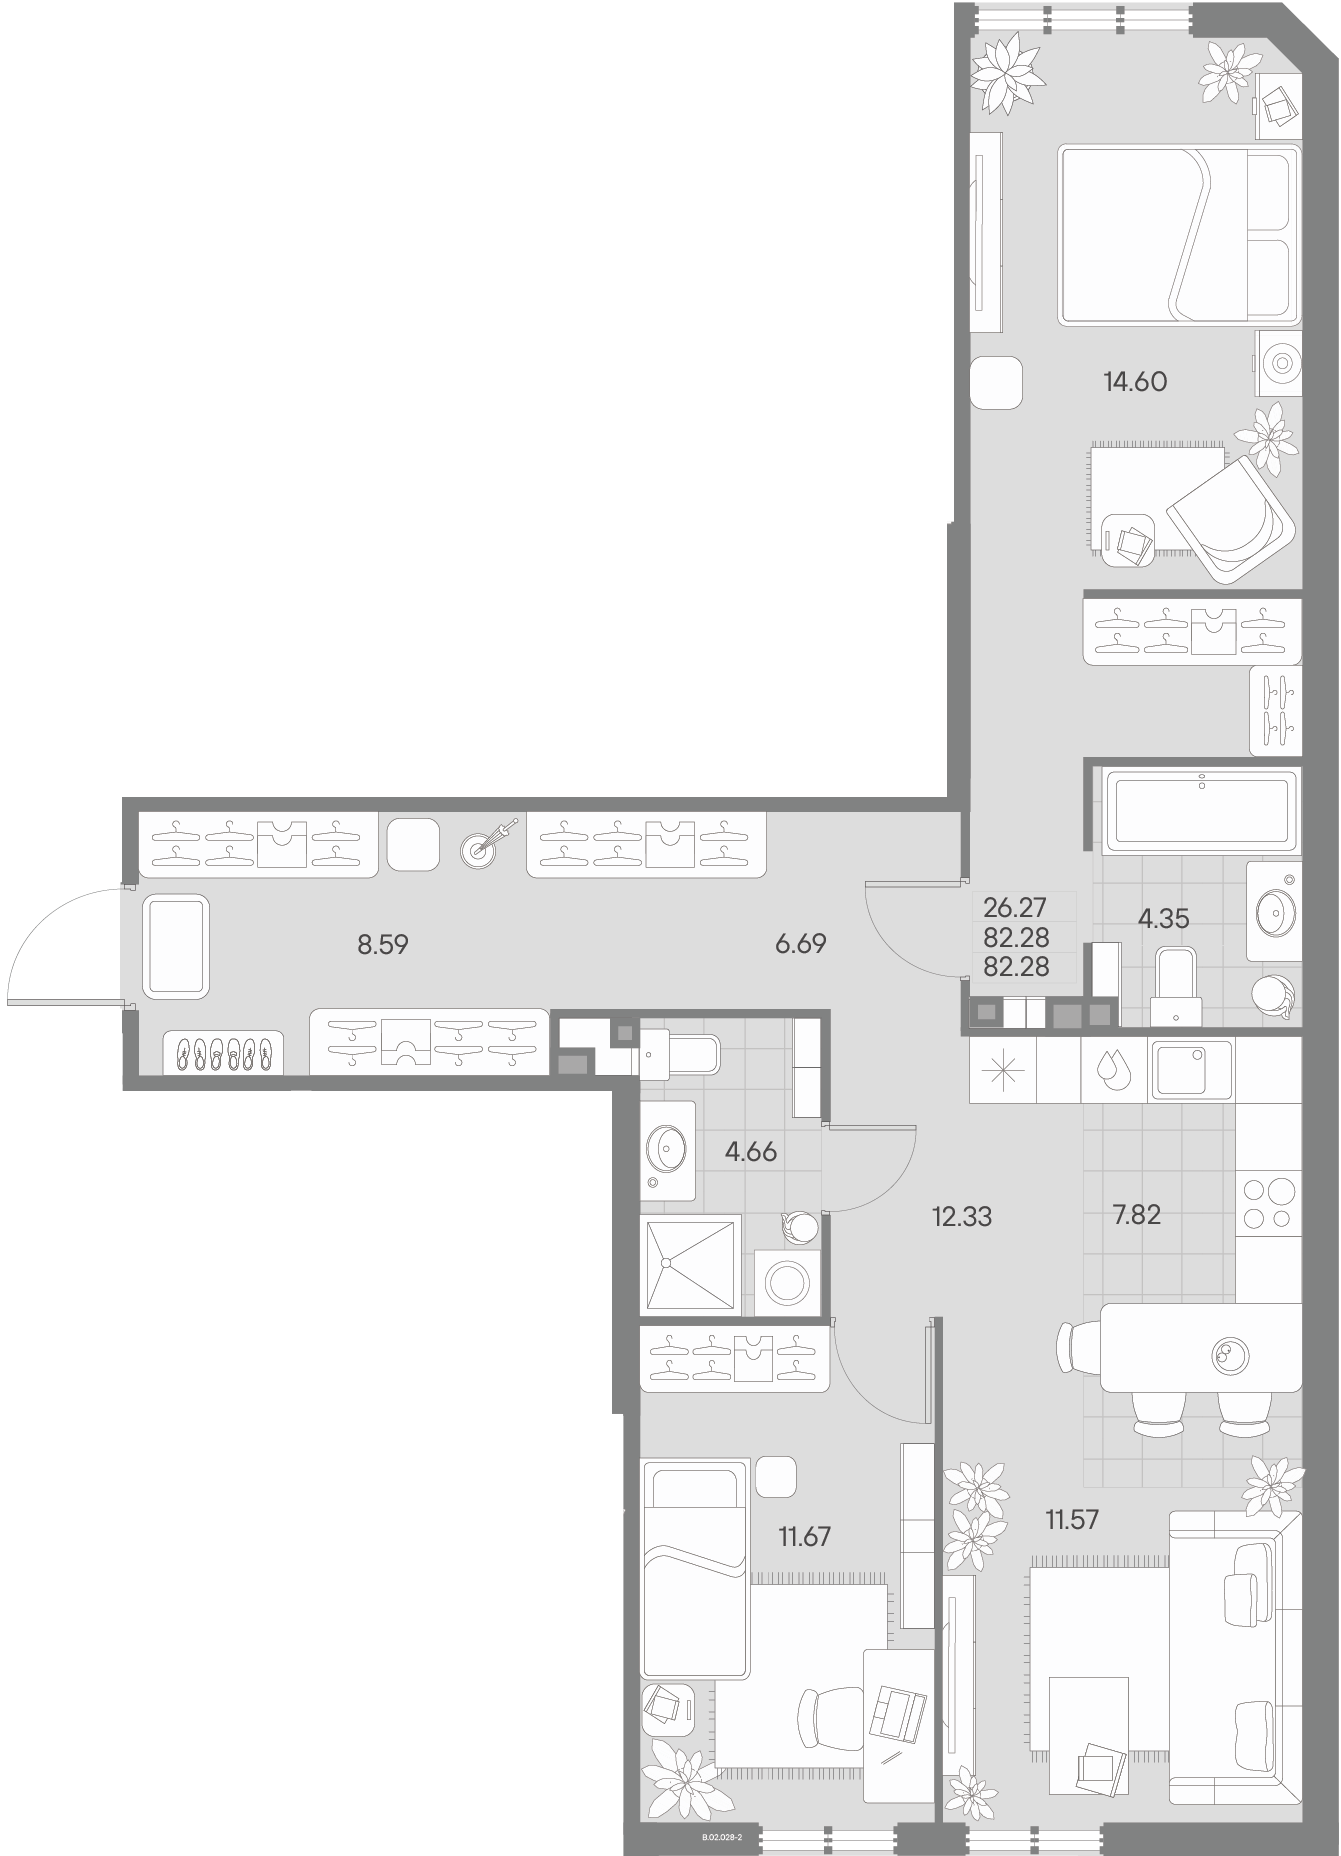 2-комнатная квартира  №28-2 в AMO: 82.28 м², этаж 2 - купить в Санкт-Петербурге